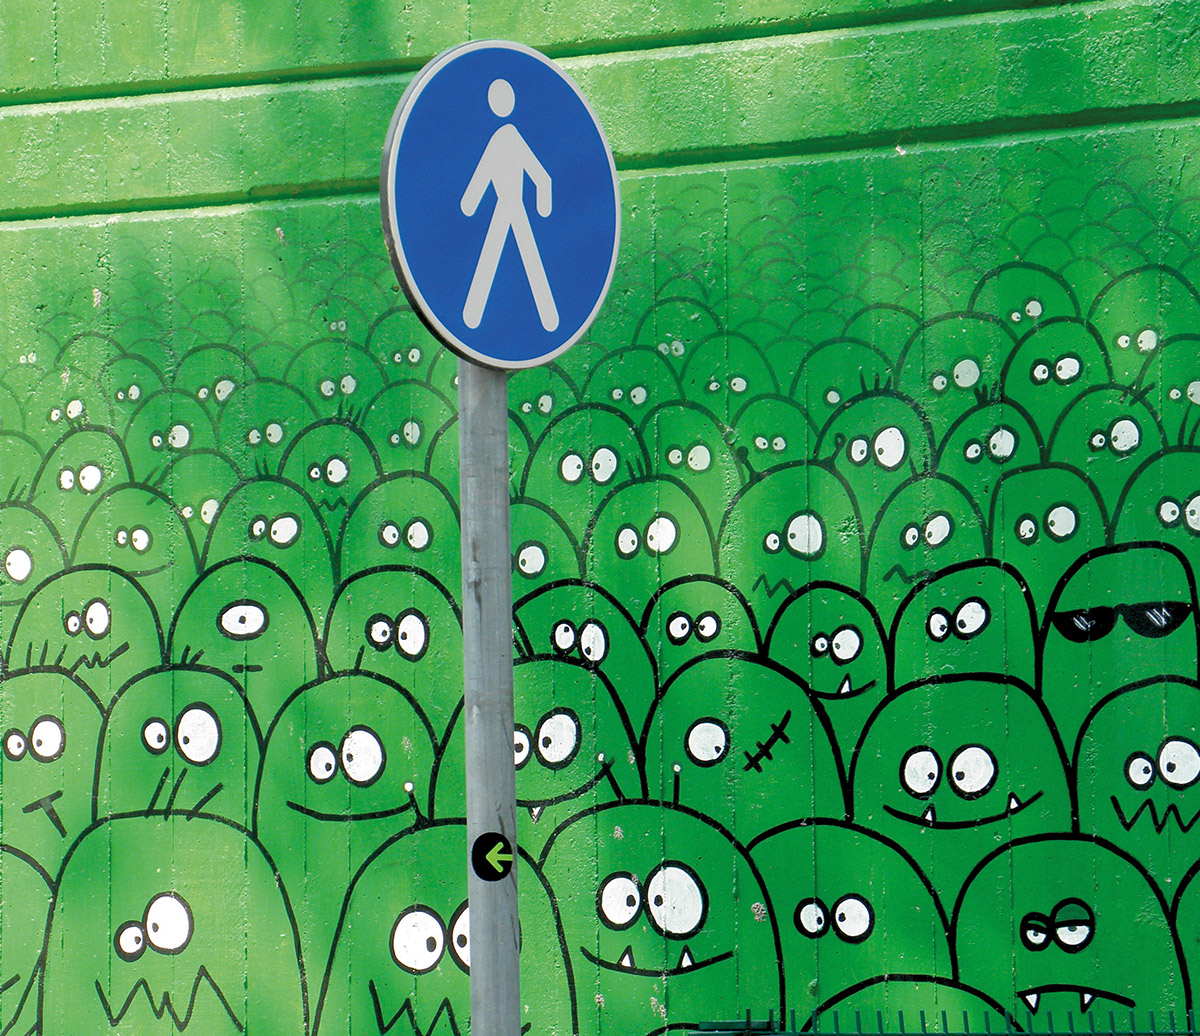 Wandbild mit lusitgen grünen Monsterköpfen davor ein Fußgängerschild.